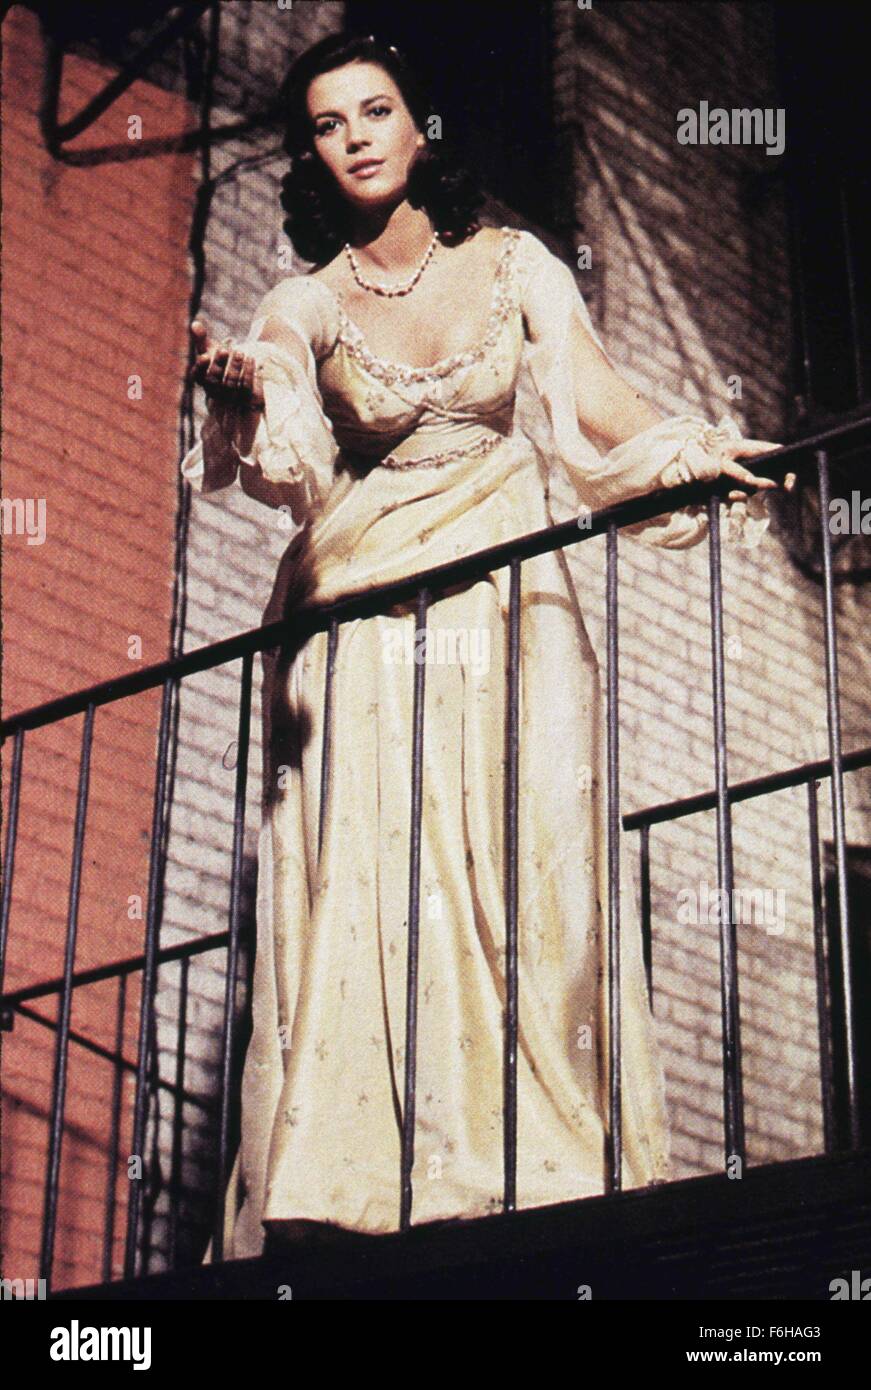 1961, il titolo del film: West Side Story, nella foto: 1961, PREMI - Accademia, foto migliori, Natalie legno, dramma, sincero, appartamento, passaggi, scale, vicolo, notte, amore, cantando, Oscar rétro. (Credito Immagine: SNAP) Foto Stock